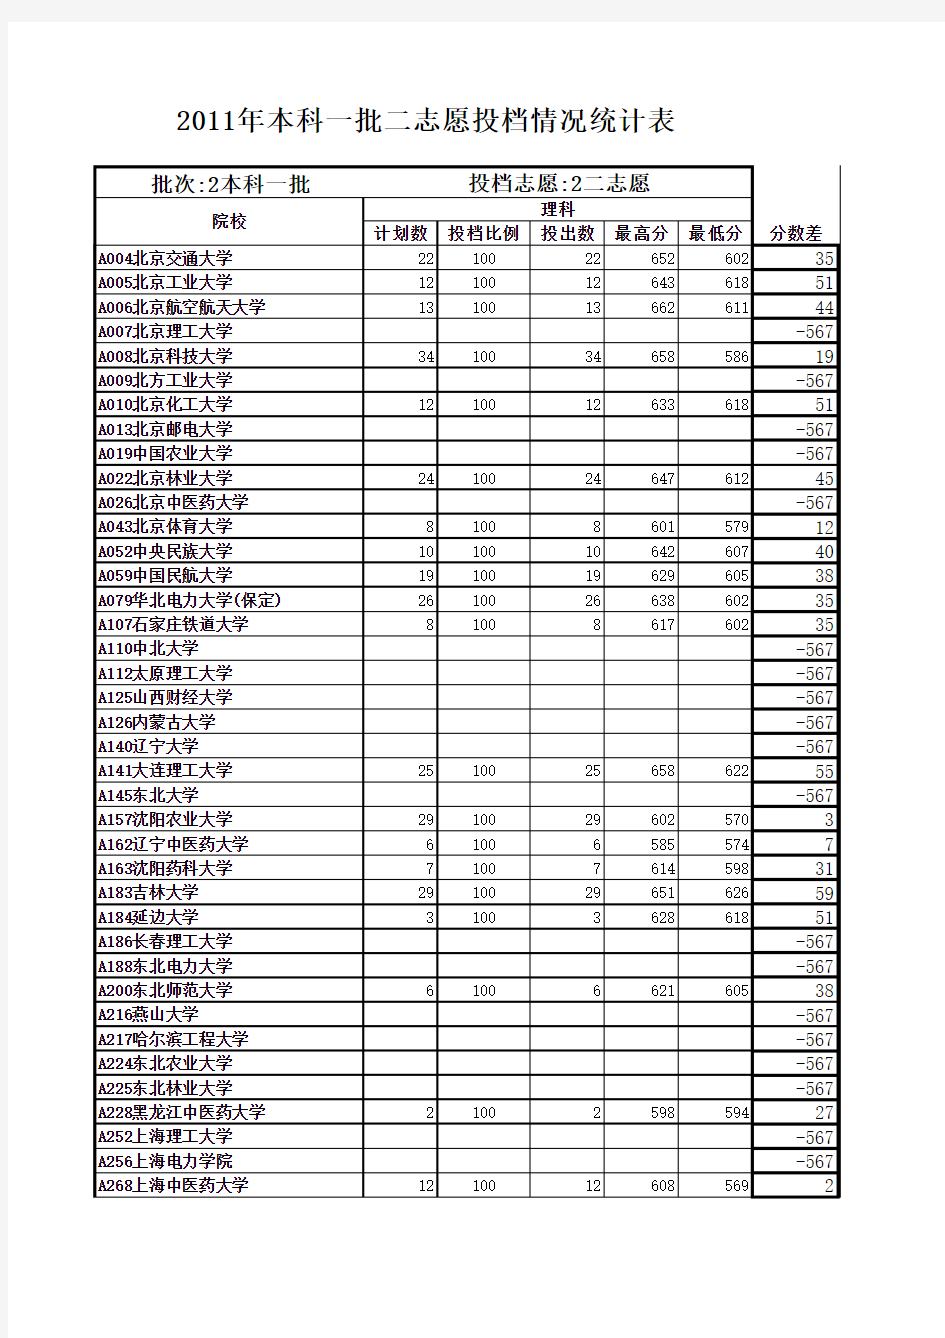 山东省2011年本科一批征求志愿院校投档情况统计表